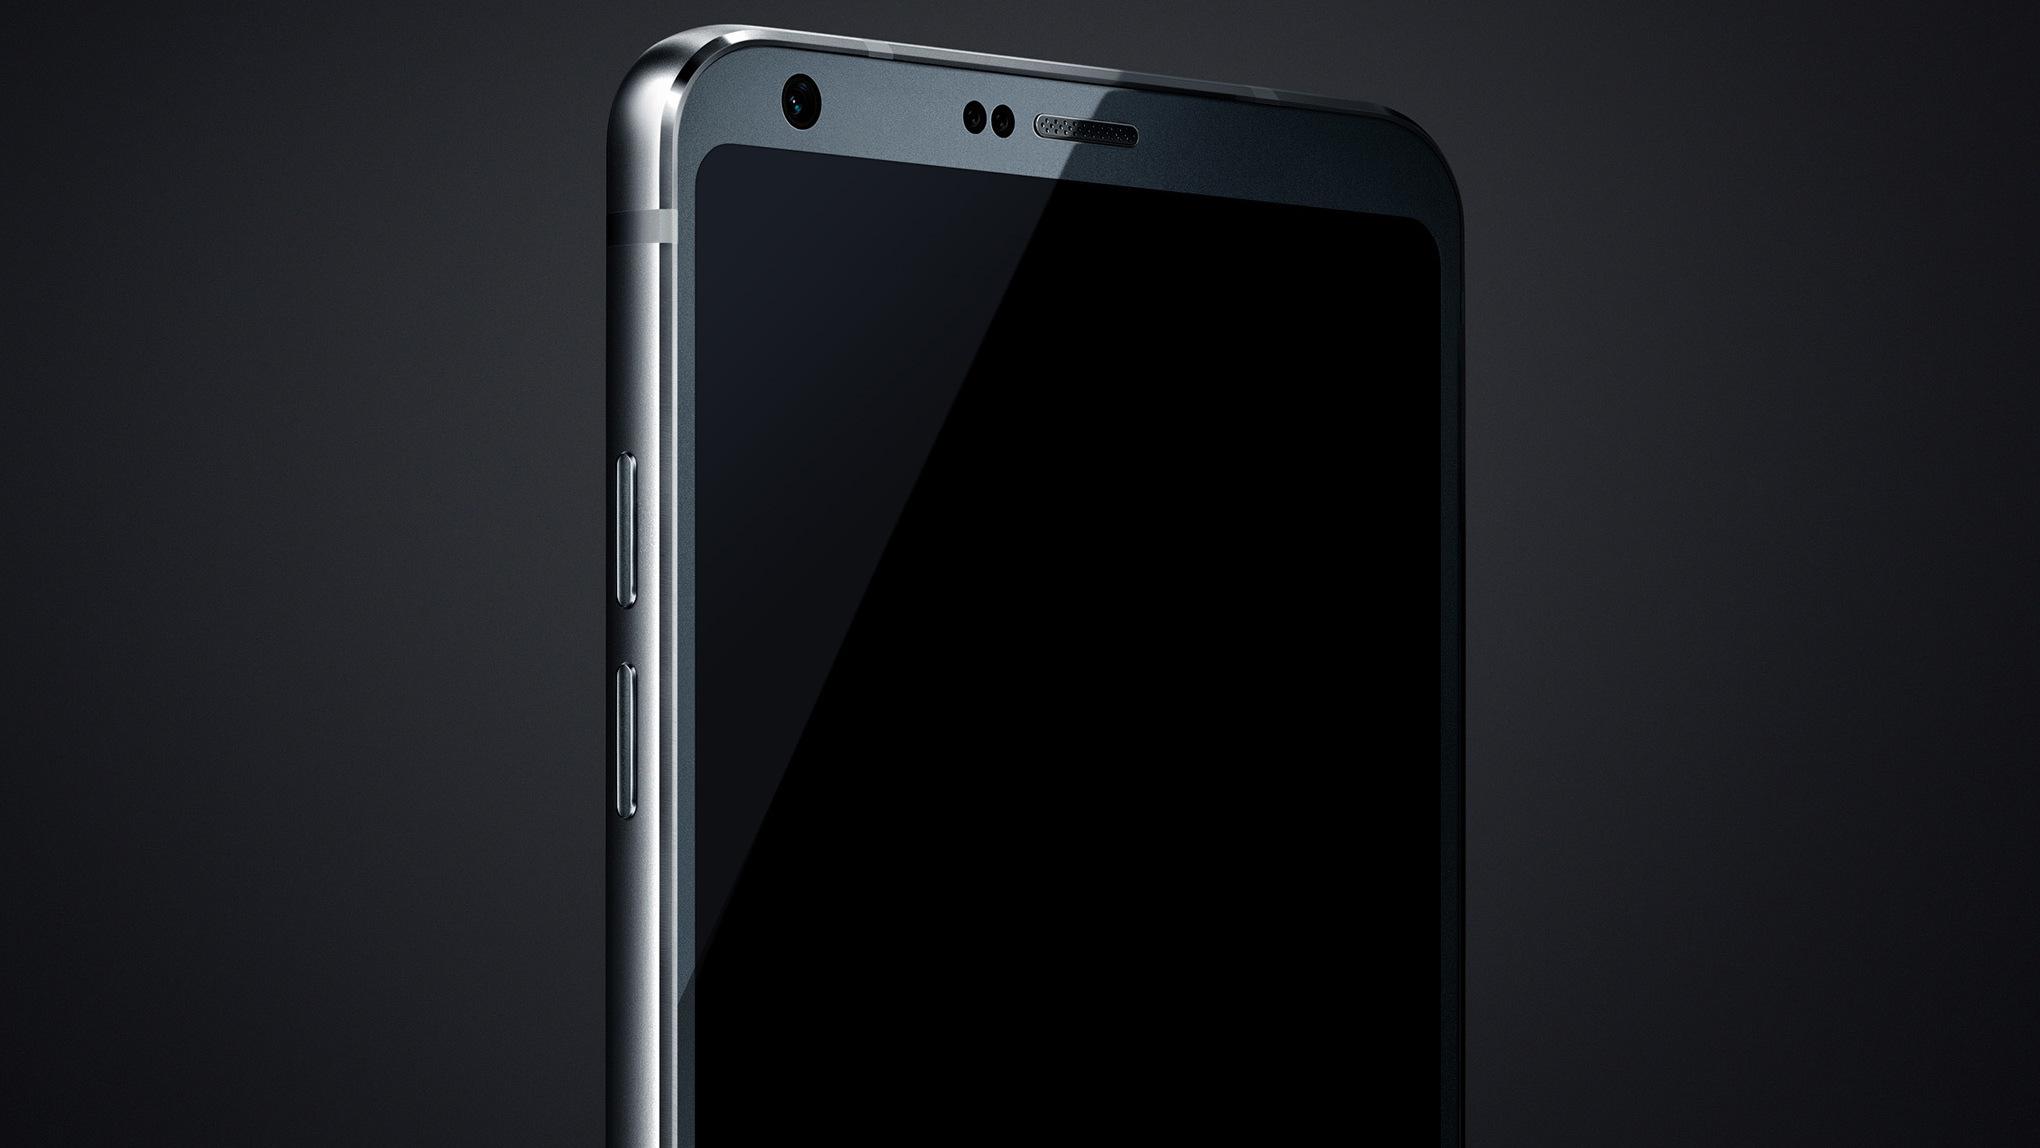 LG G6 skal se slik ut, ifølge tidligere lekkede bilder.